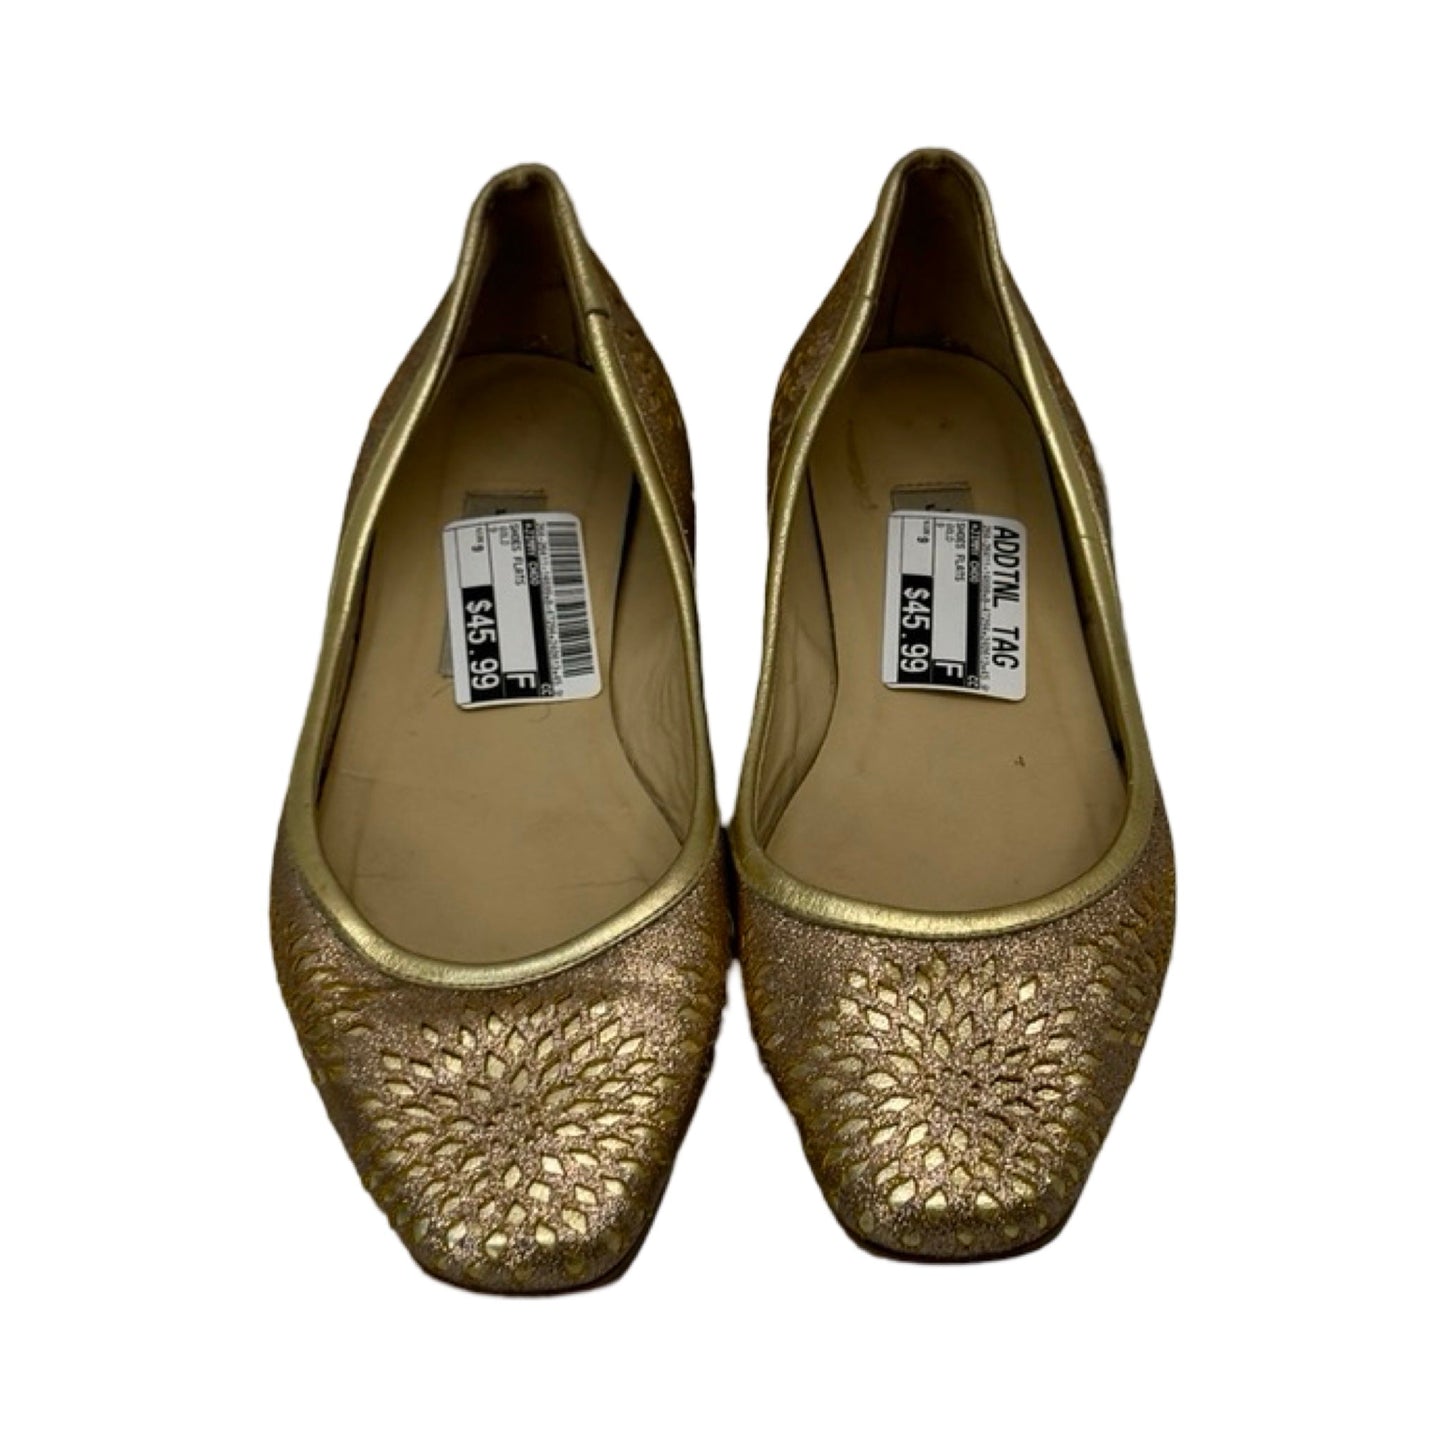 Gold Shoes Flats Jimmy Choo, Size 9